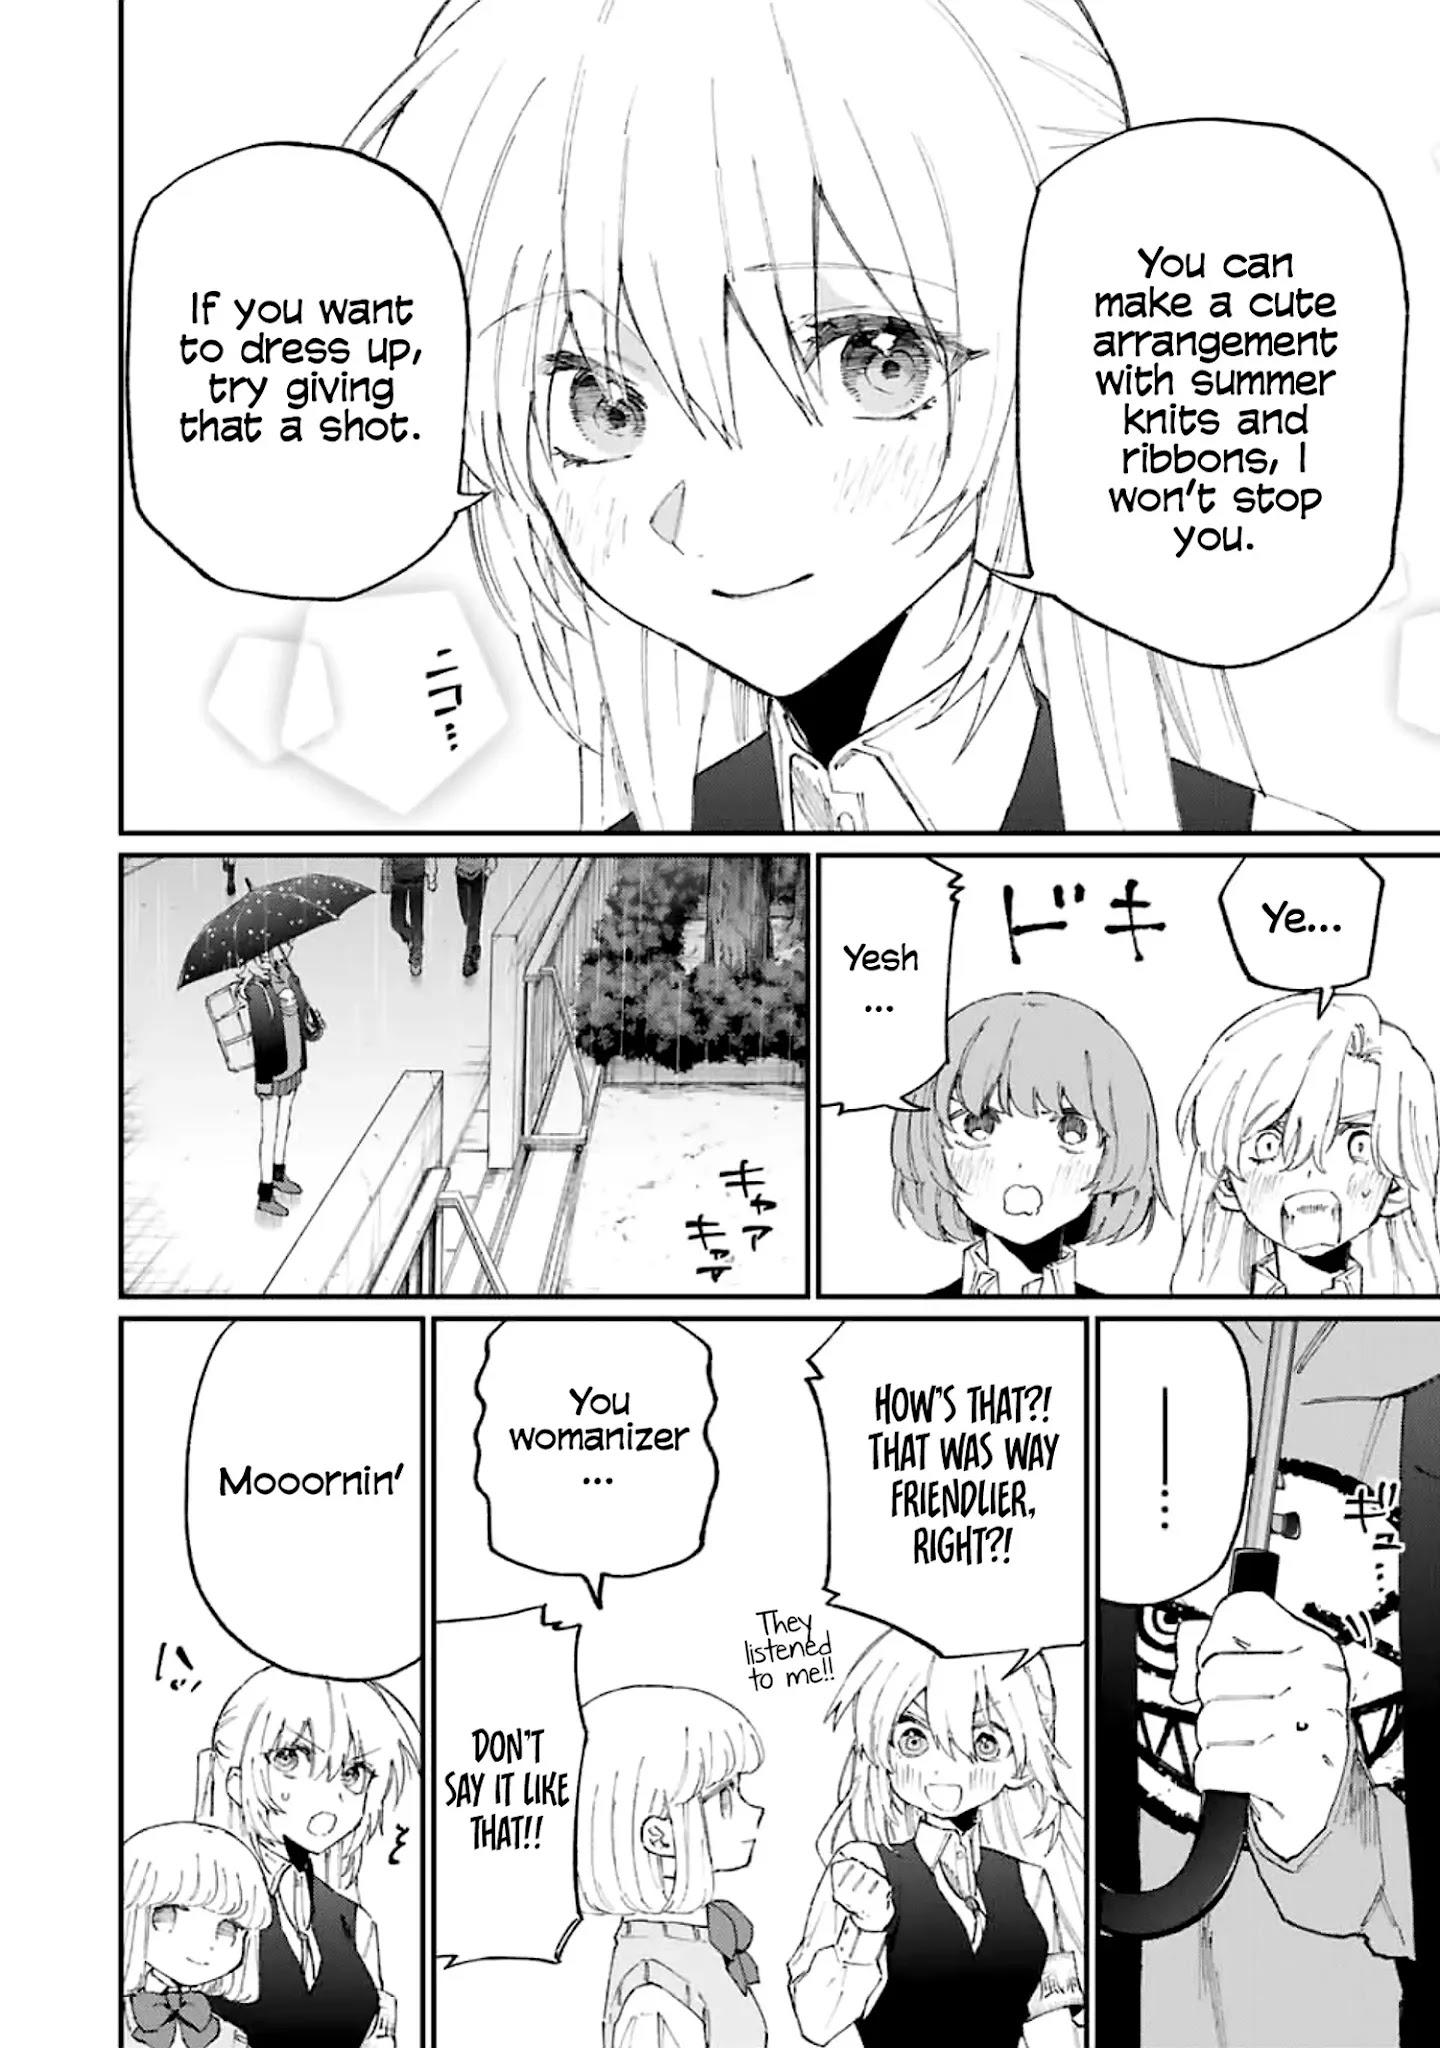 Shikimori's Not Just A Cutie Chapter 124 page 7 - Mangakakalots.com